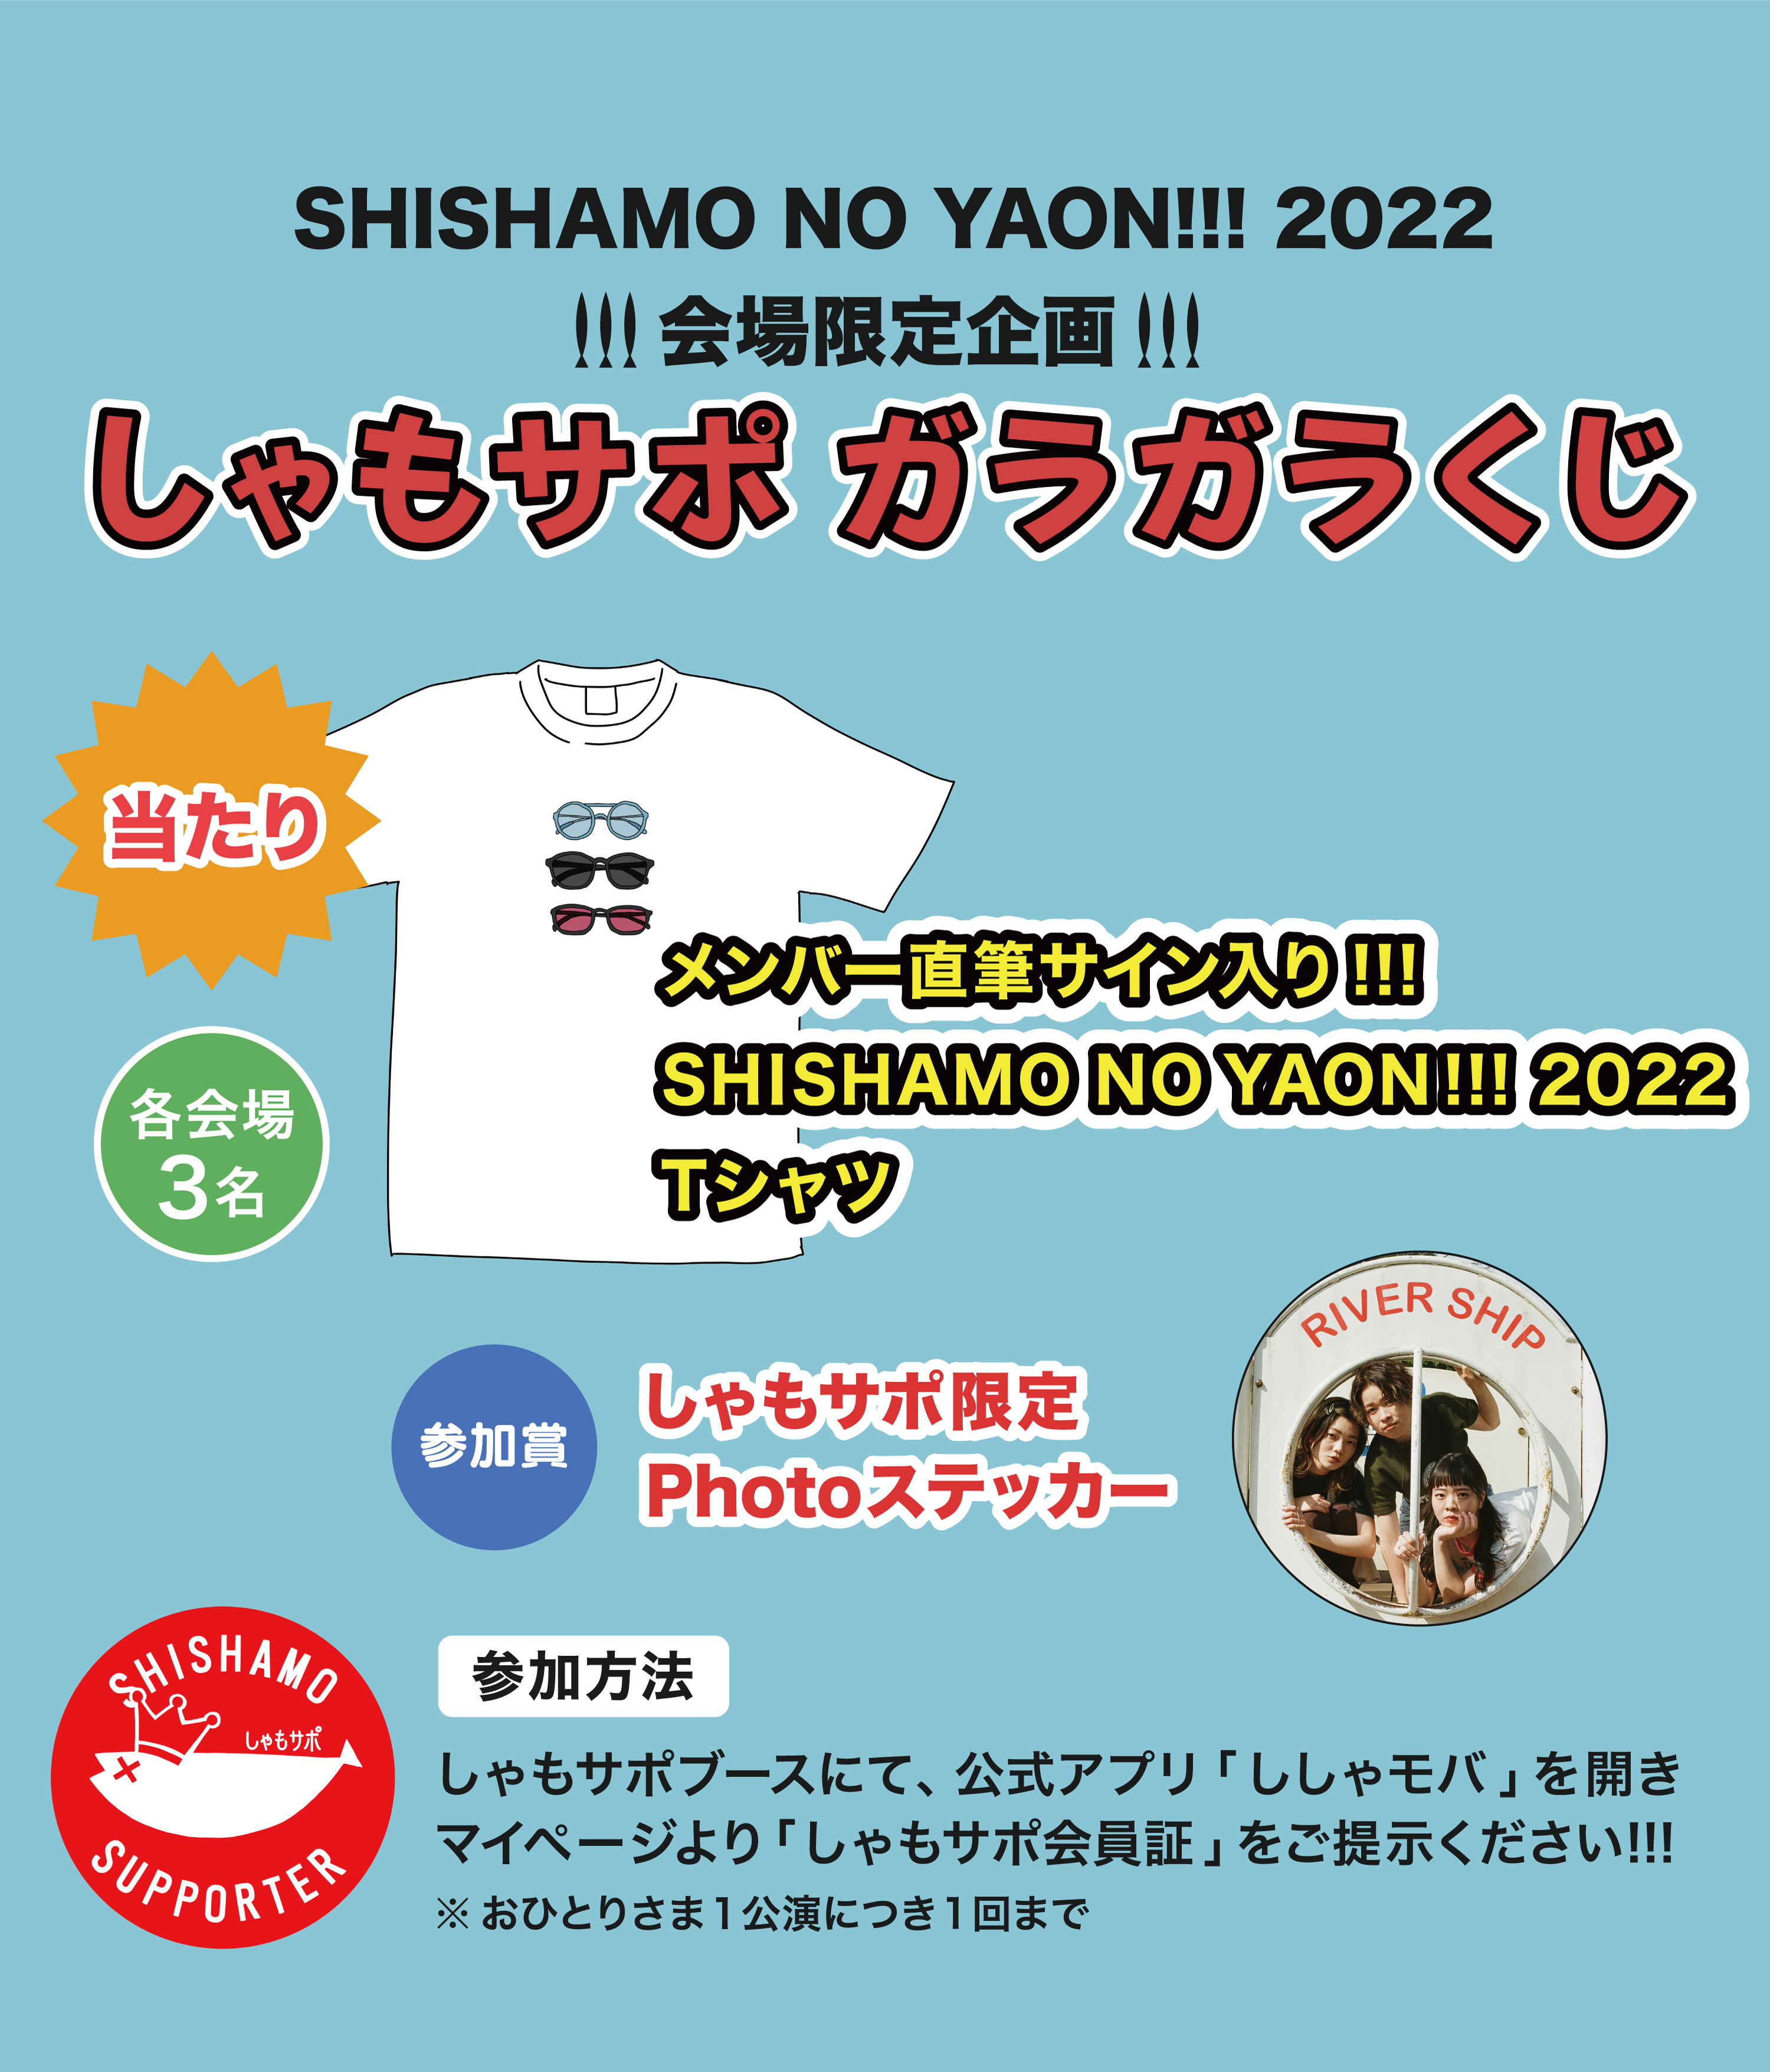 SHISHAMO NO YAON!!! 2022